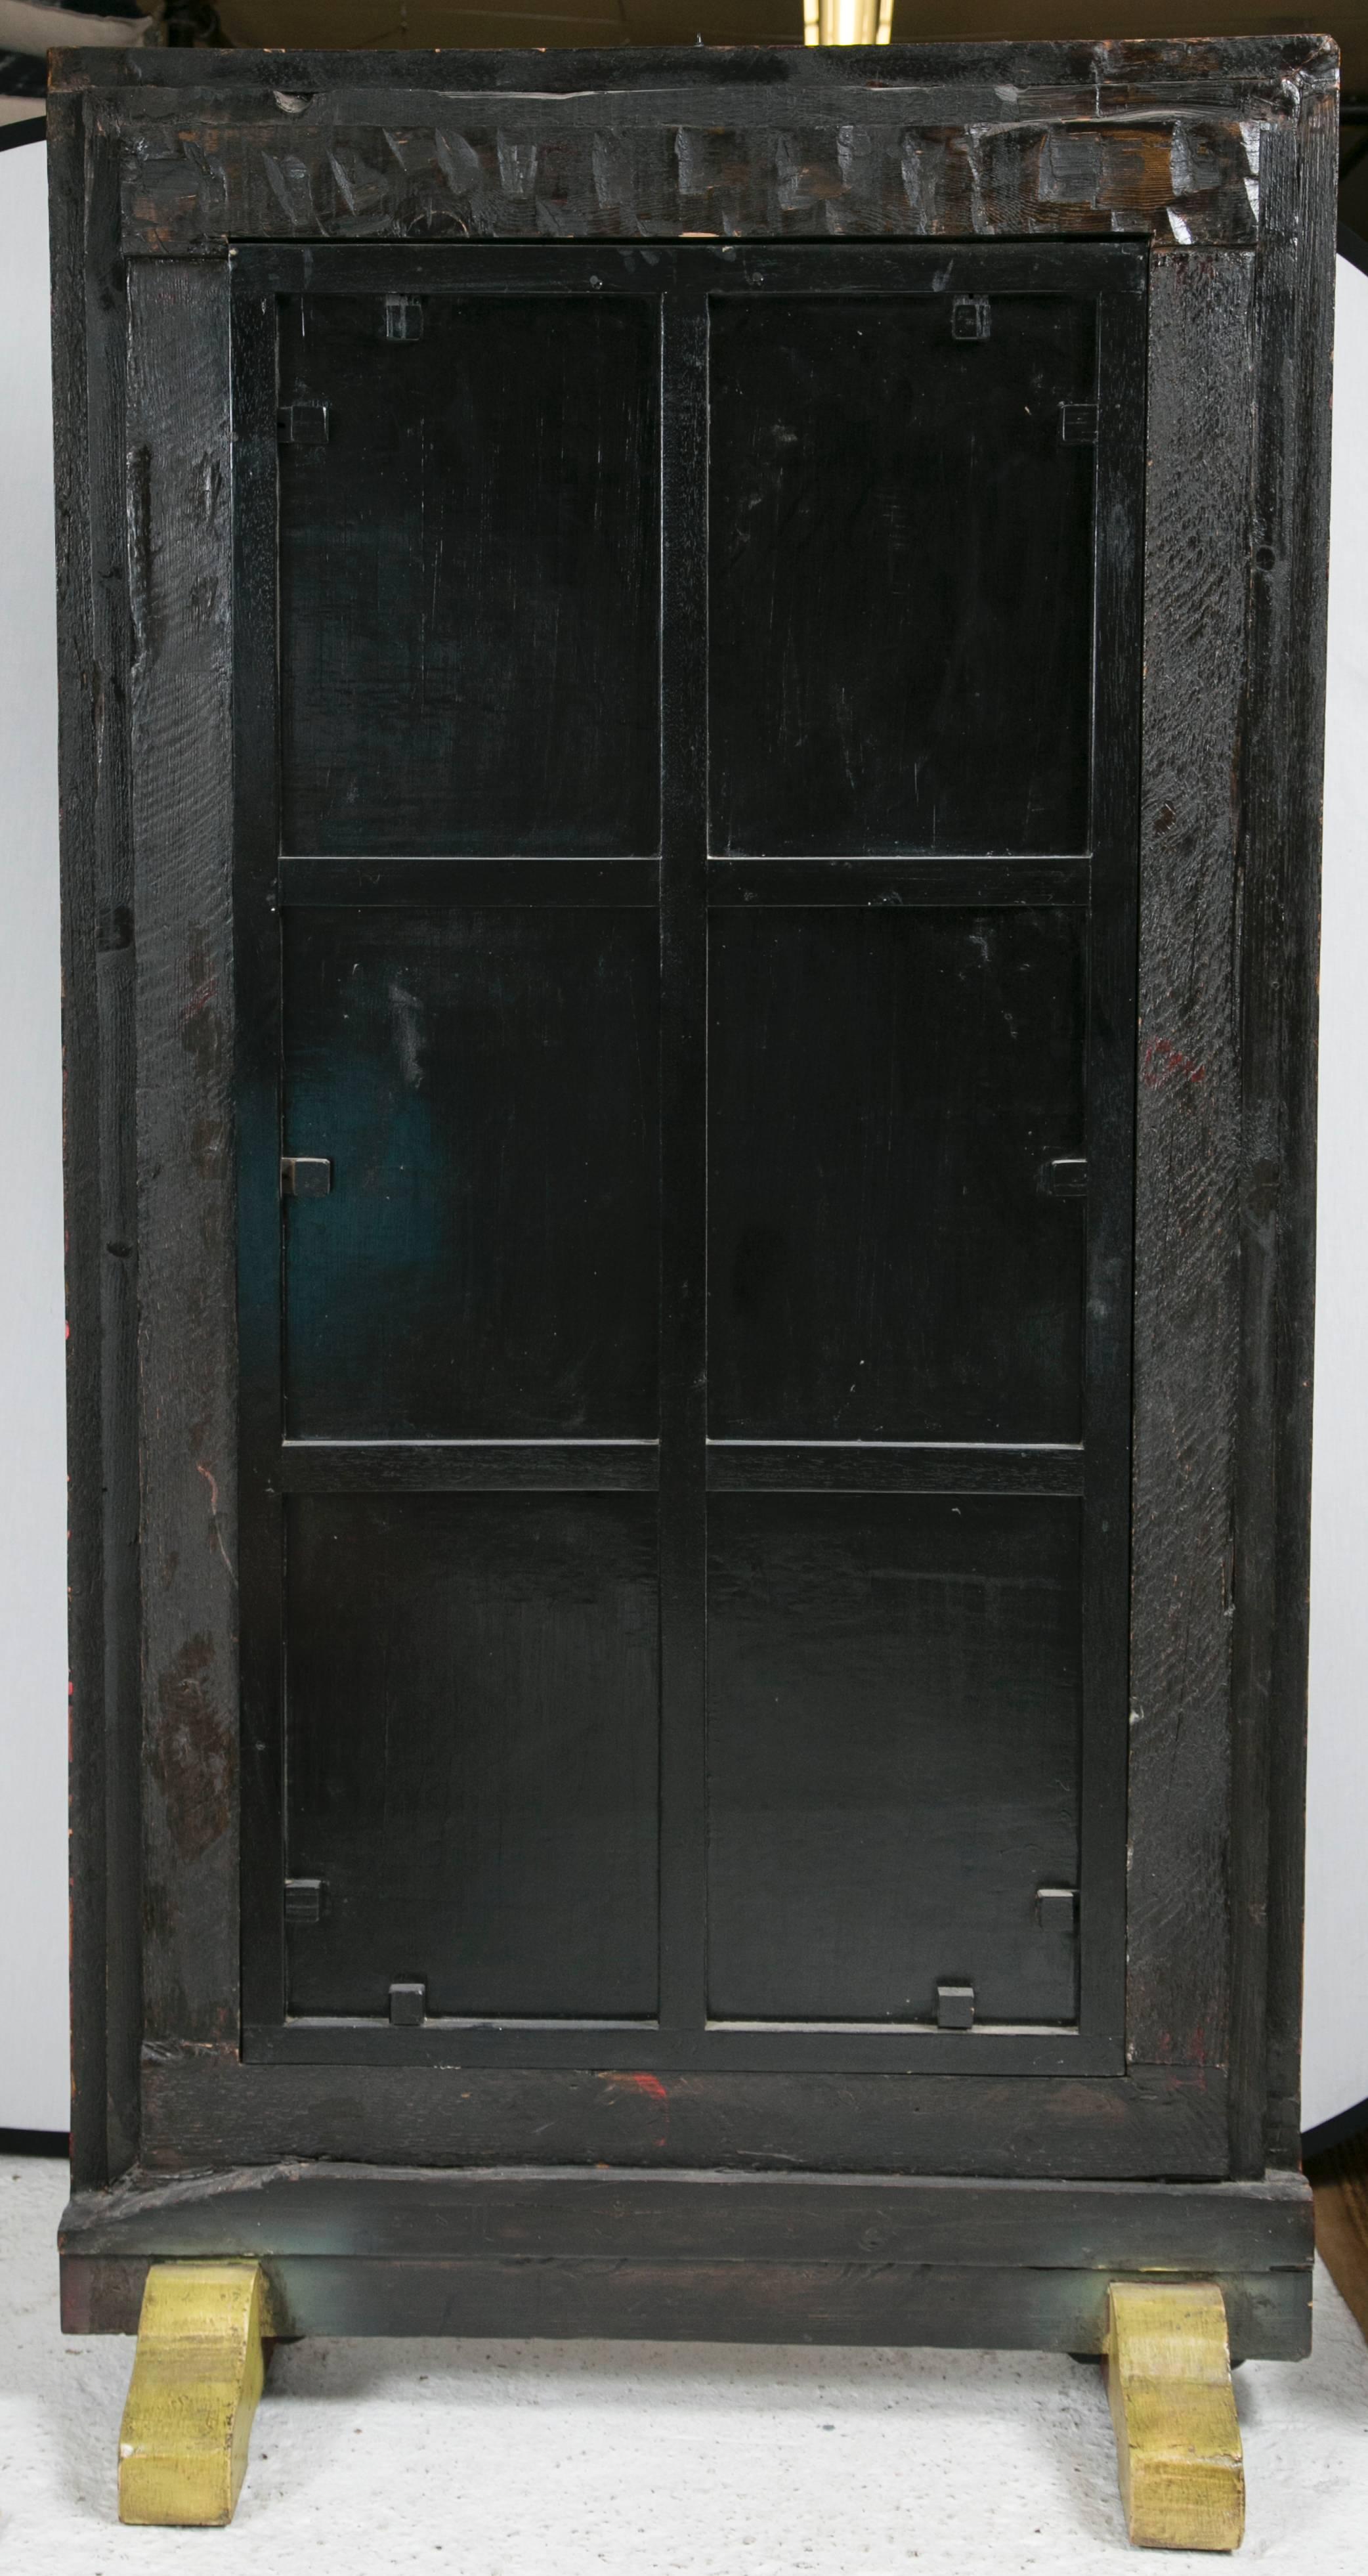 antique door mirror